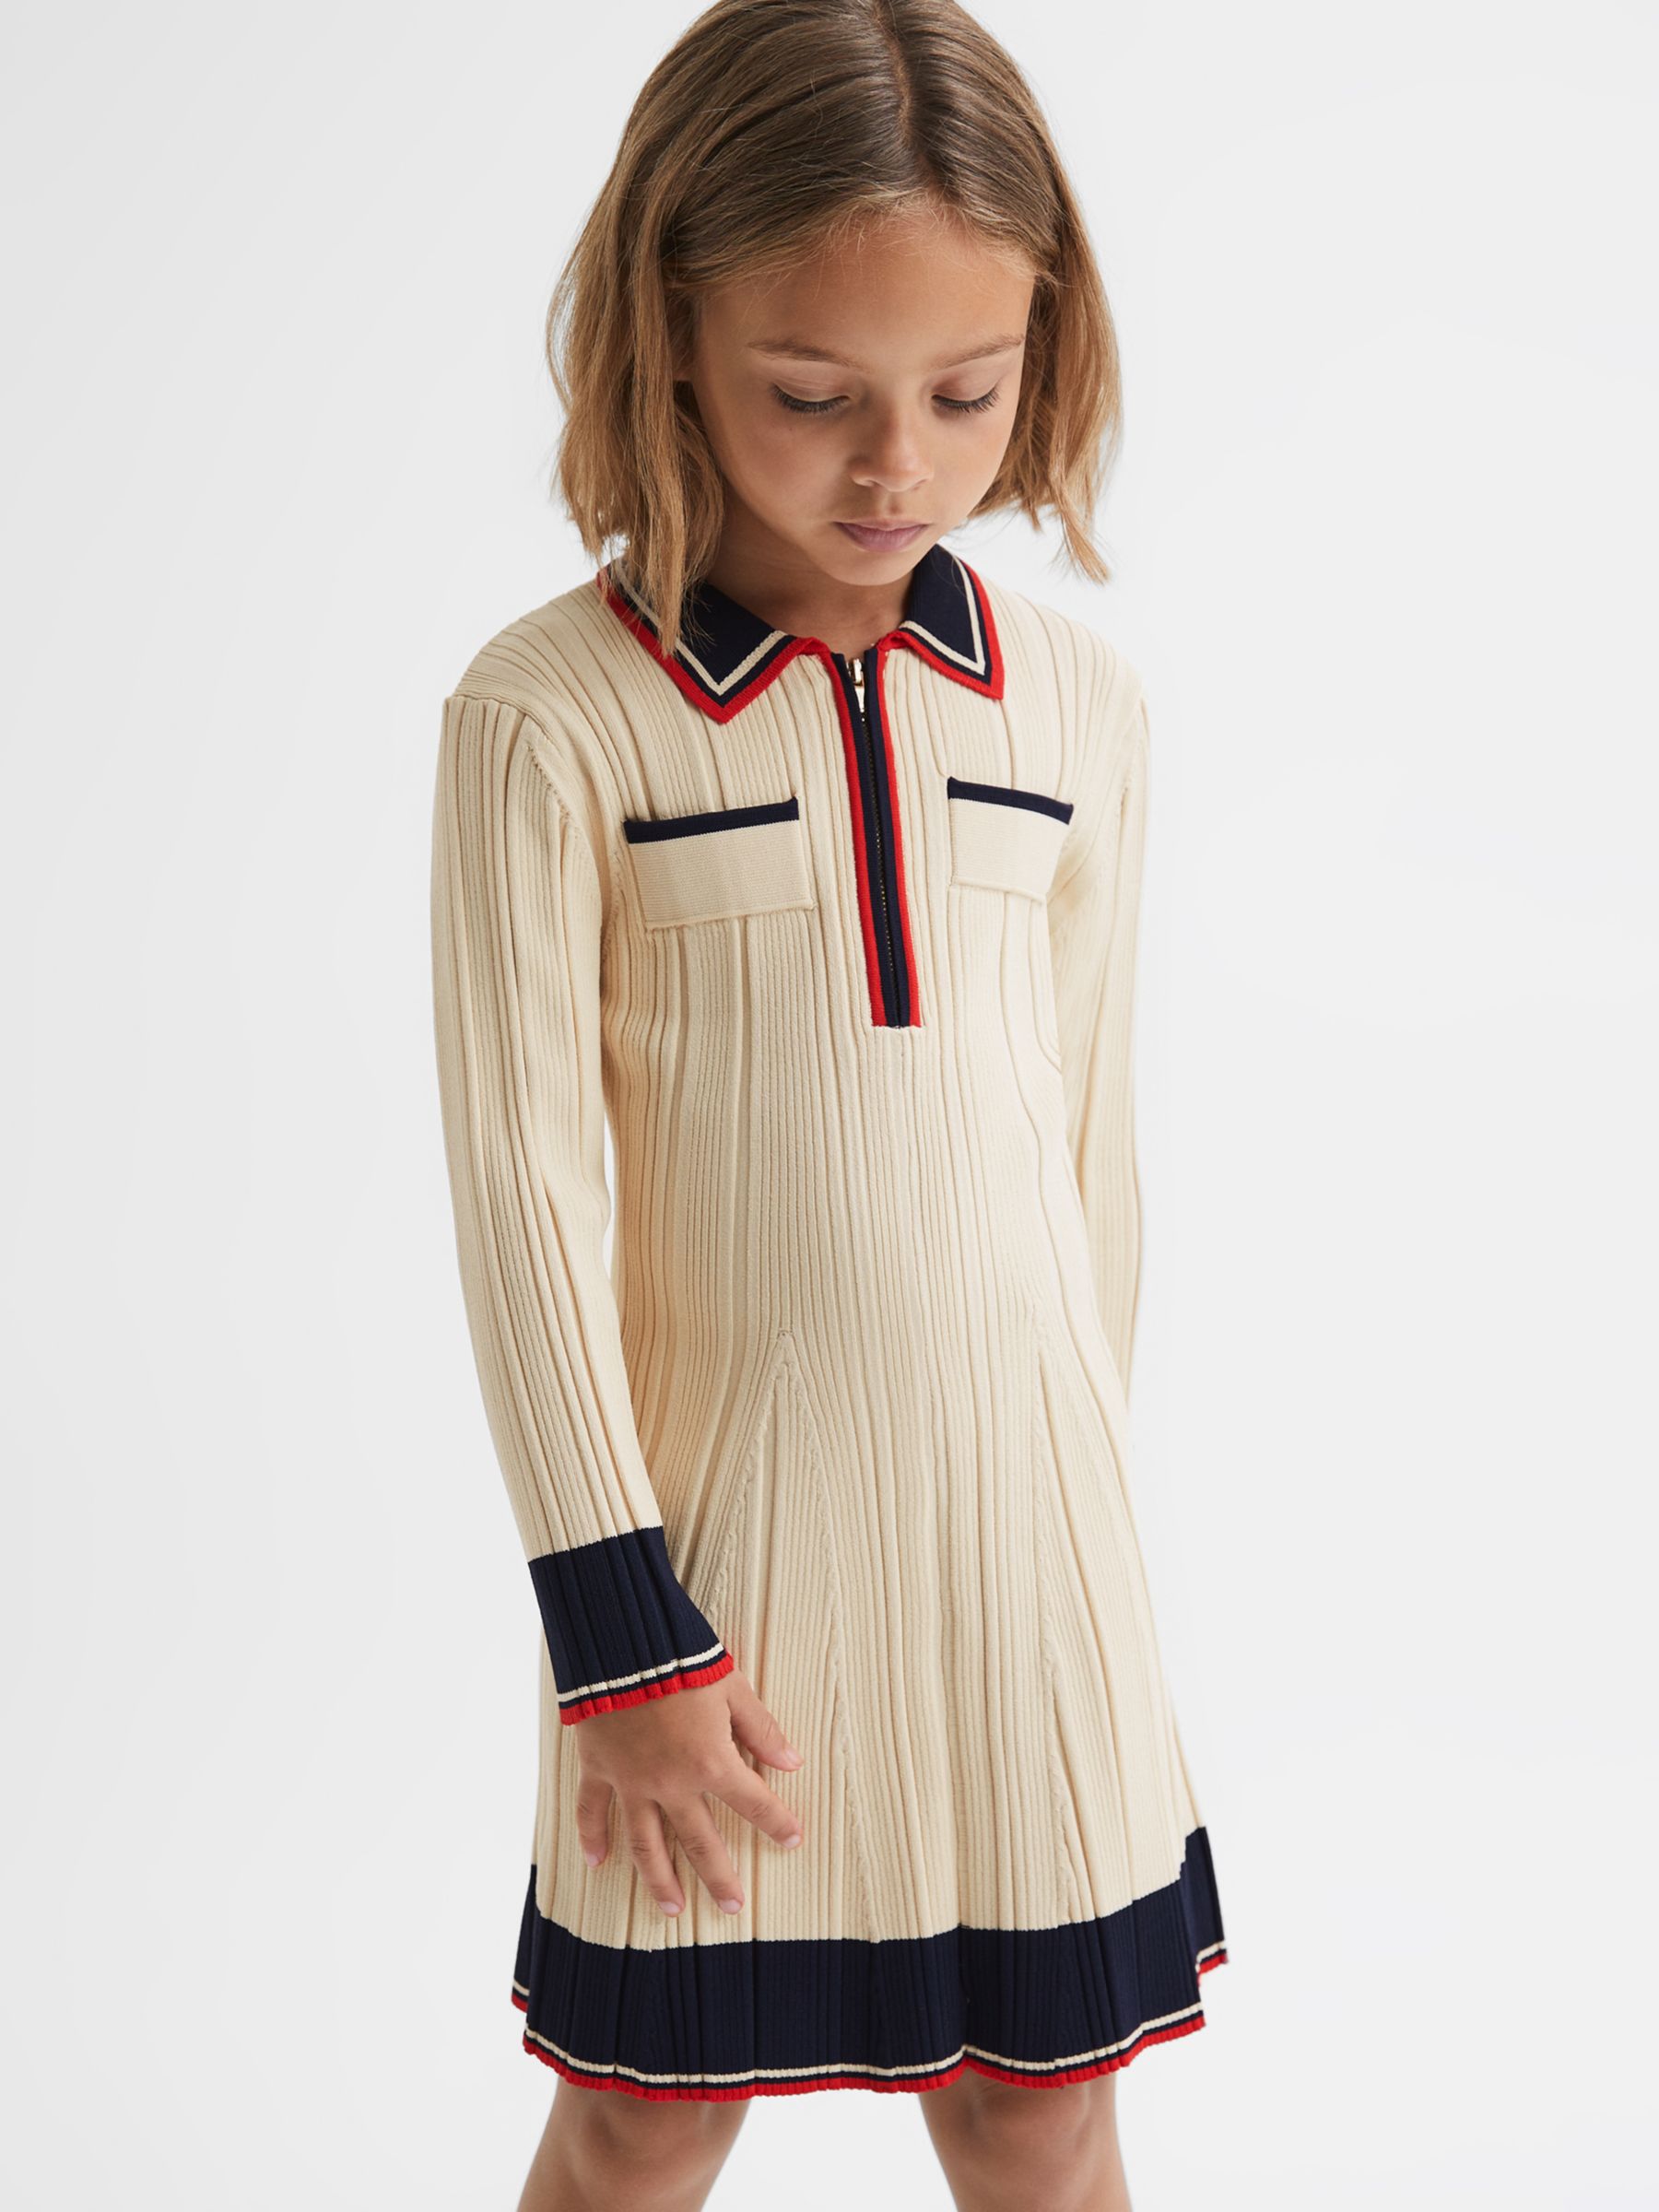 Reiss Kids' Annie Half Zip Skater Dress, Camel, 7-8 years